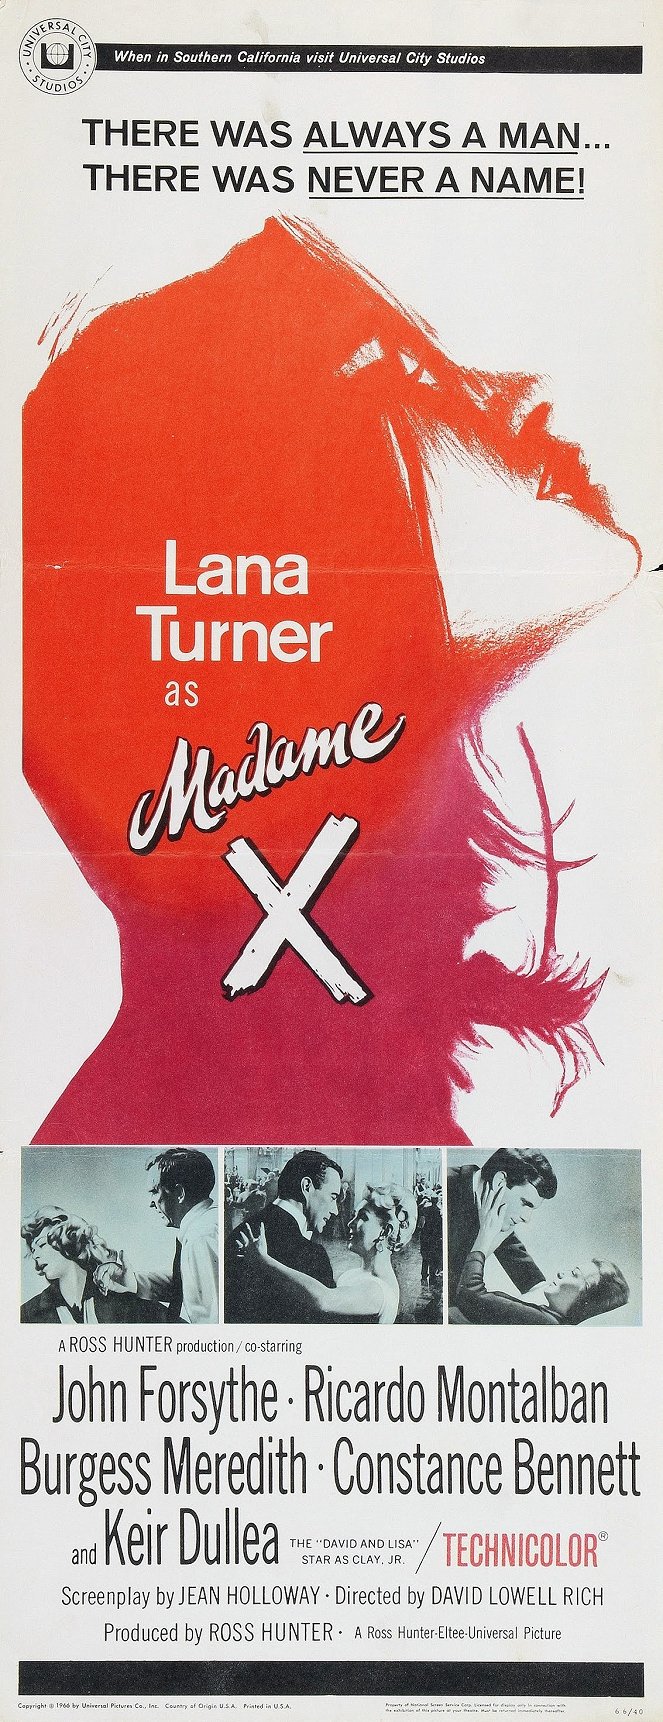 Madame X - Plakáty